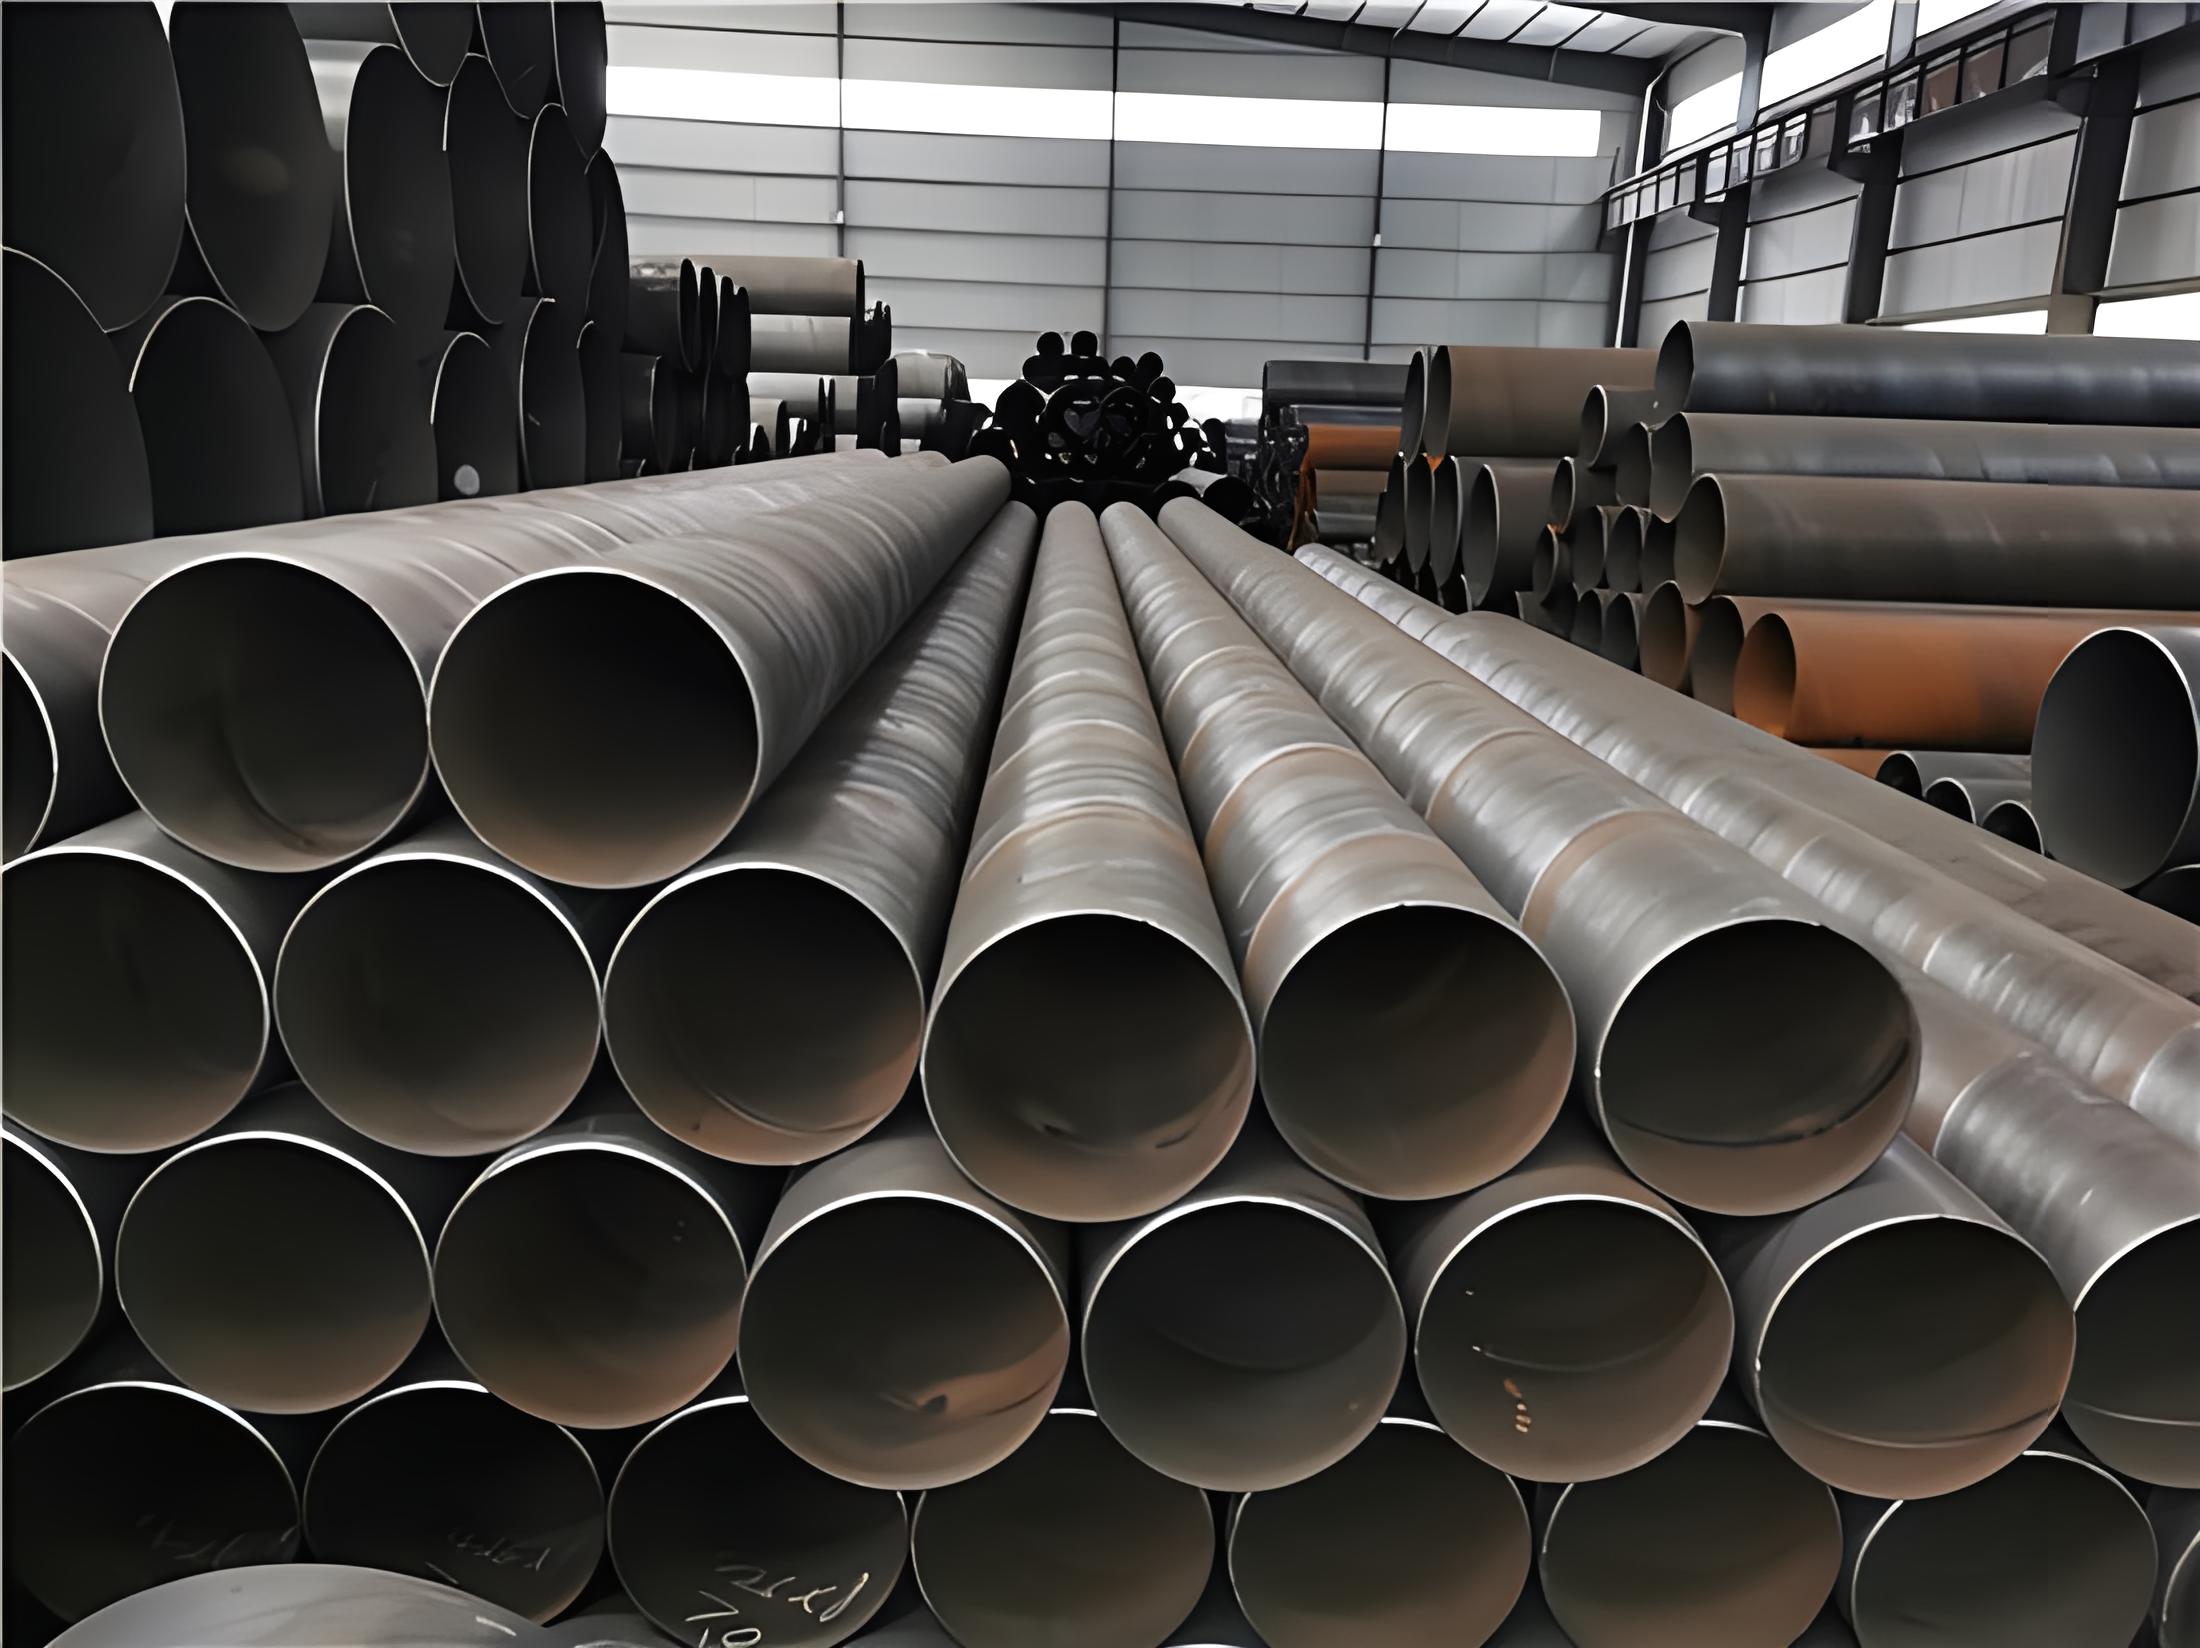 新疆螺旋钢管现代工业建设的坚实基石